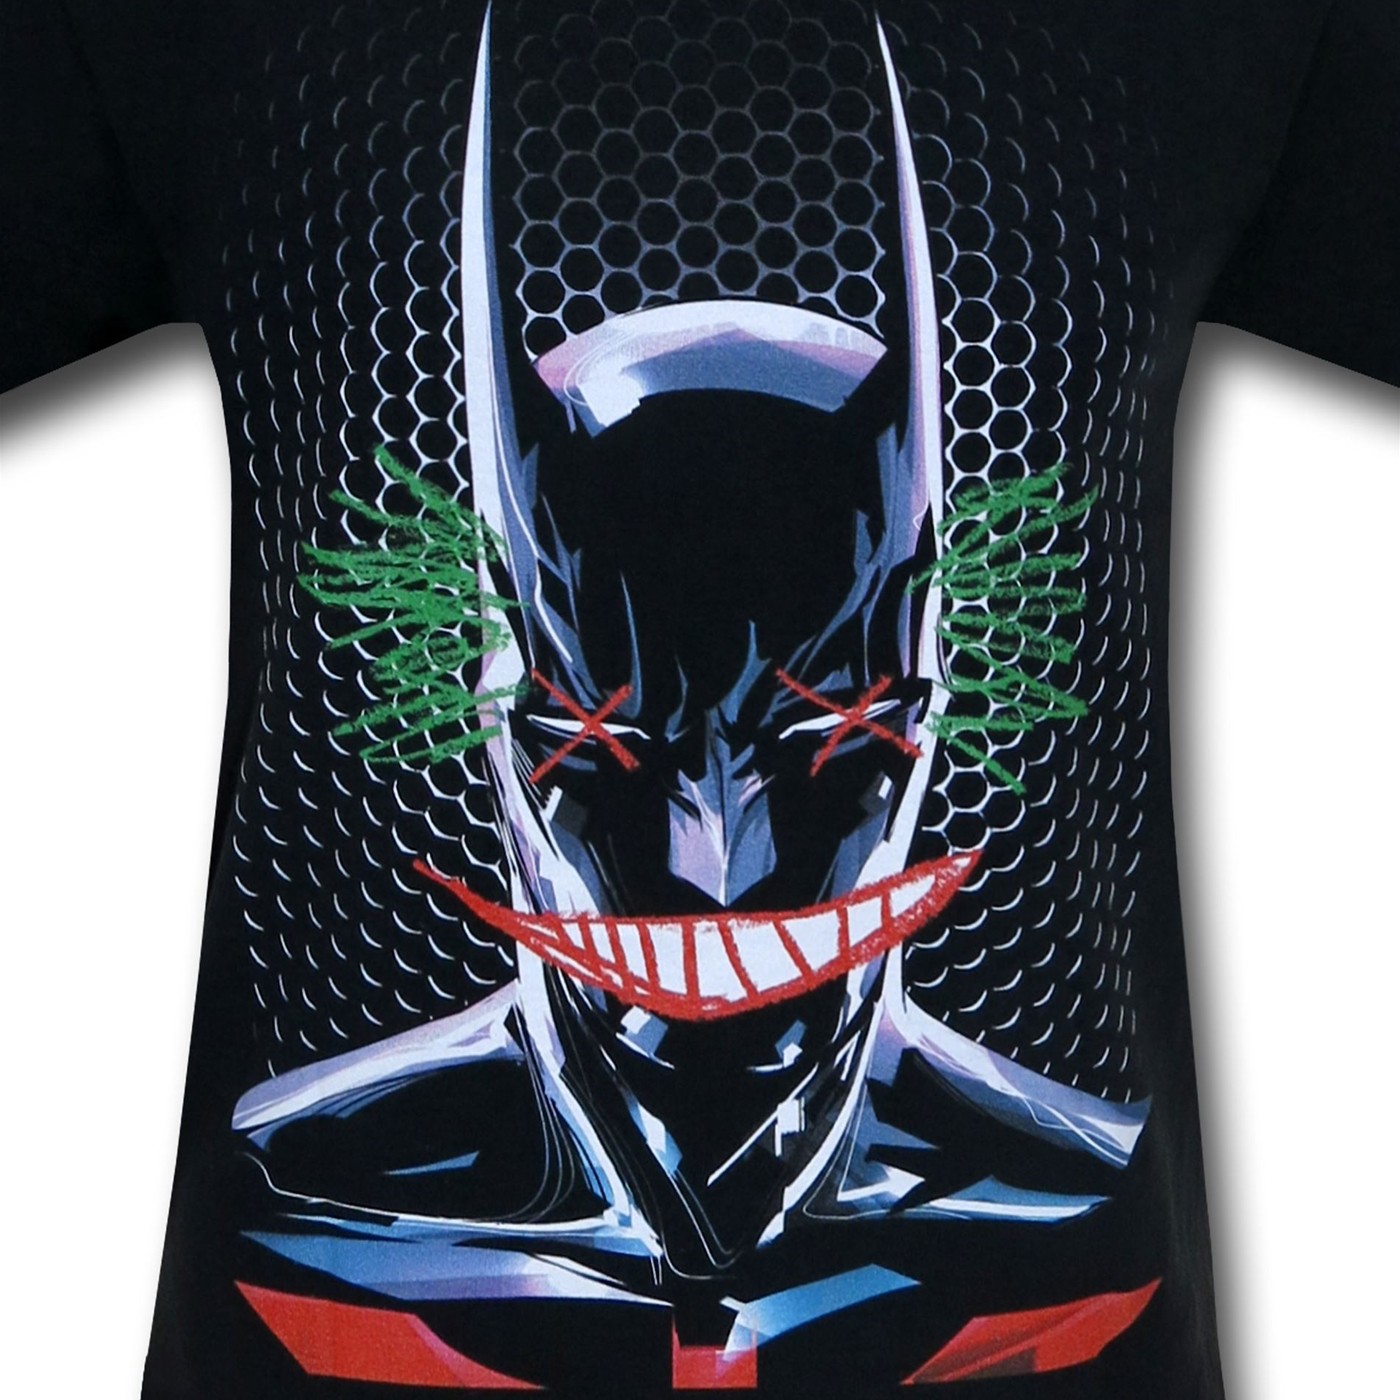 Batman Beyond Joker Sketch T-Shirt